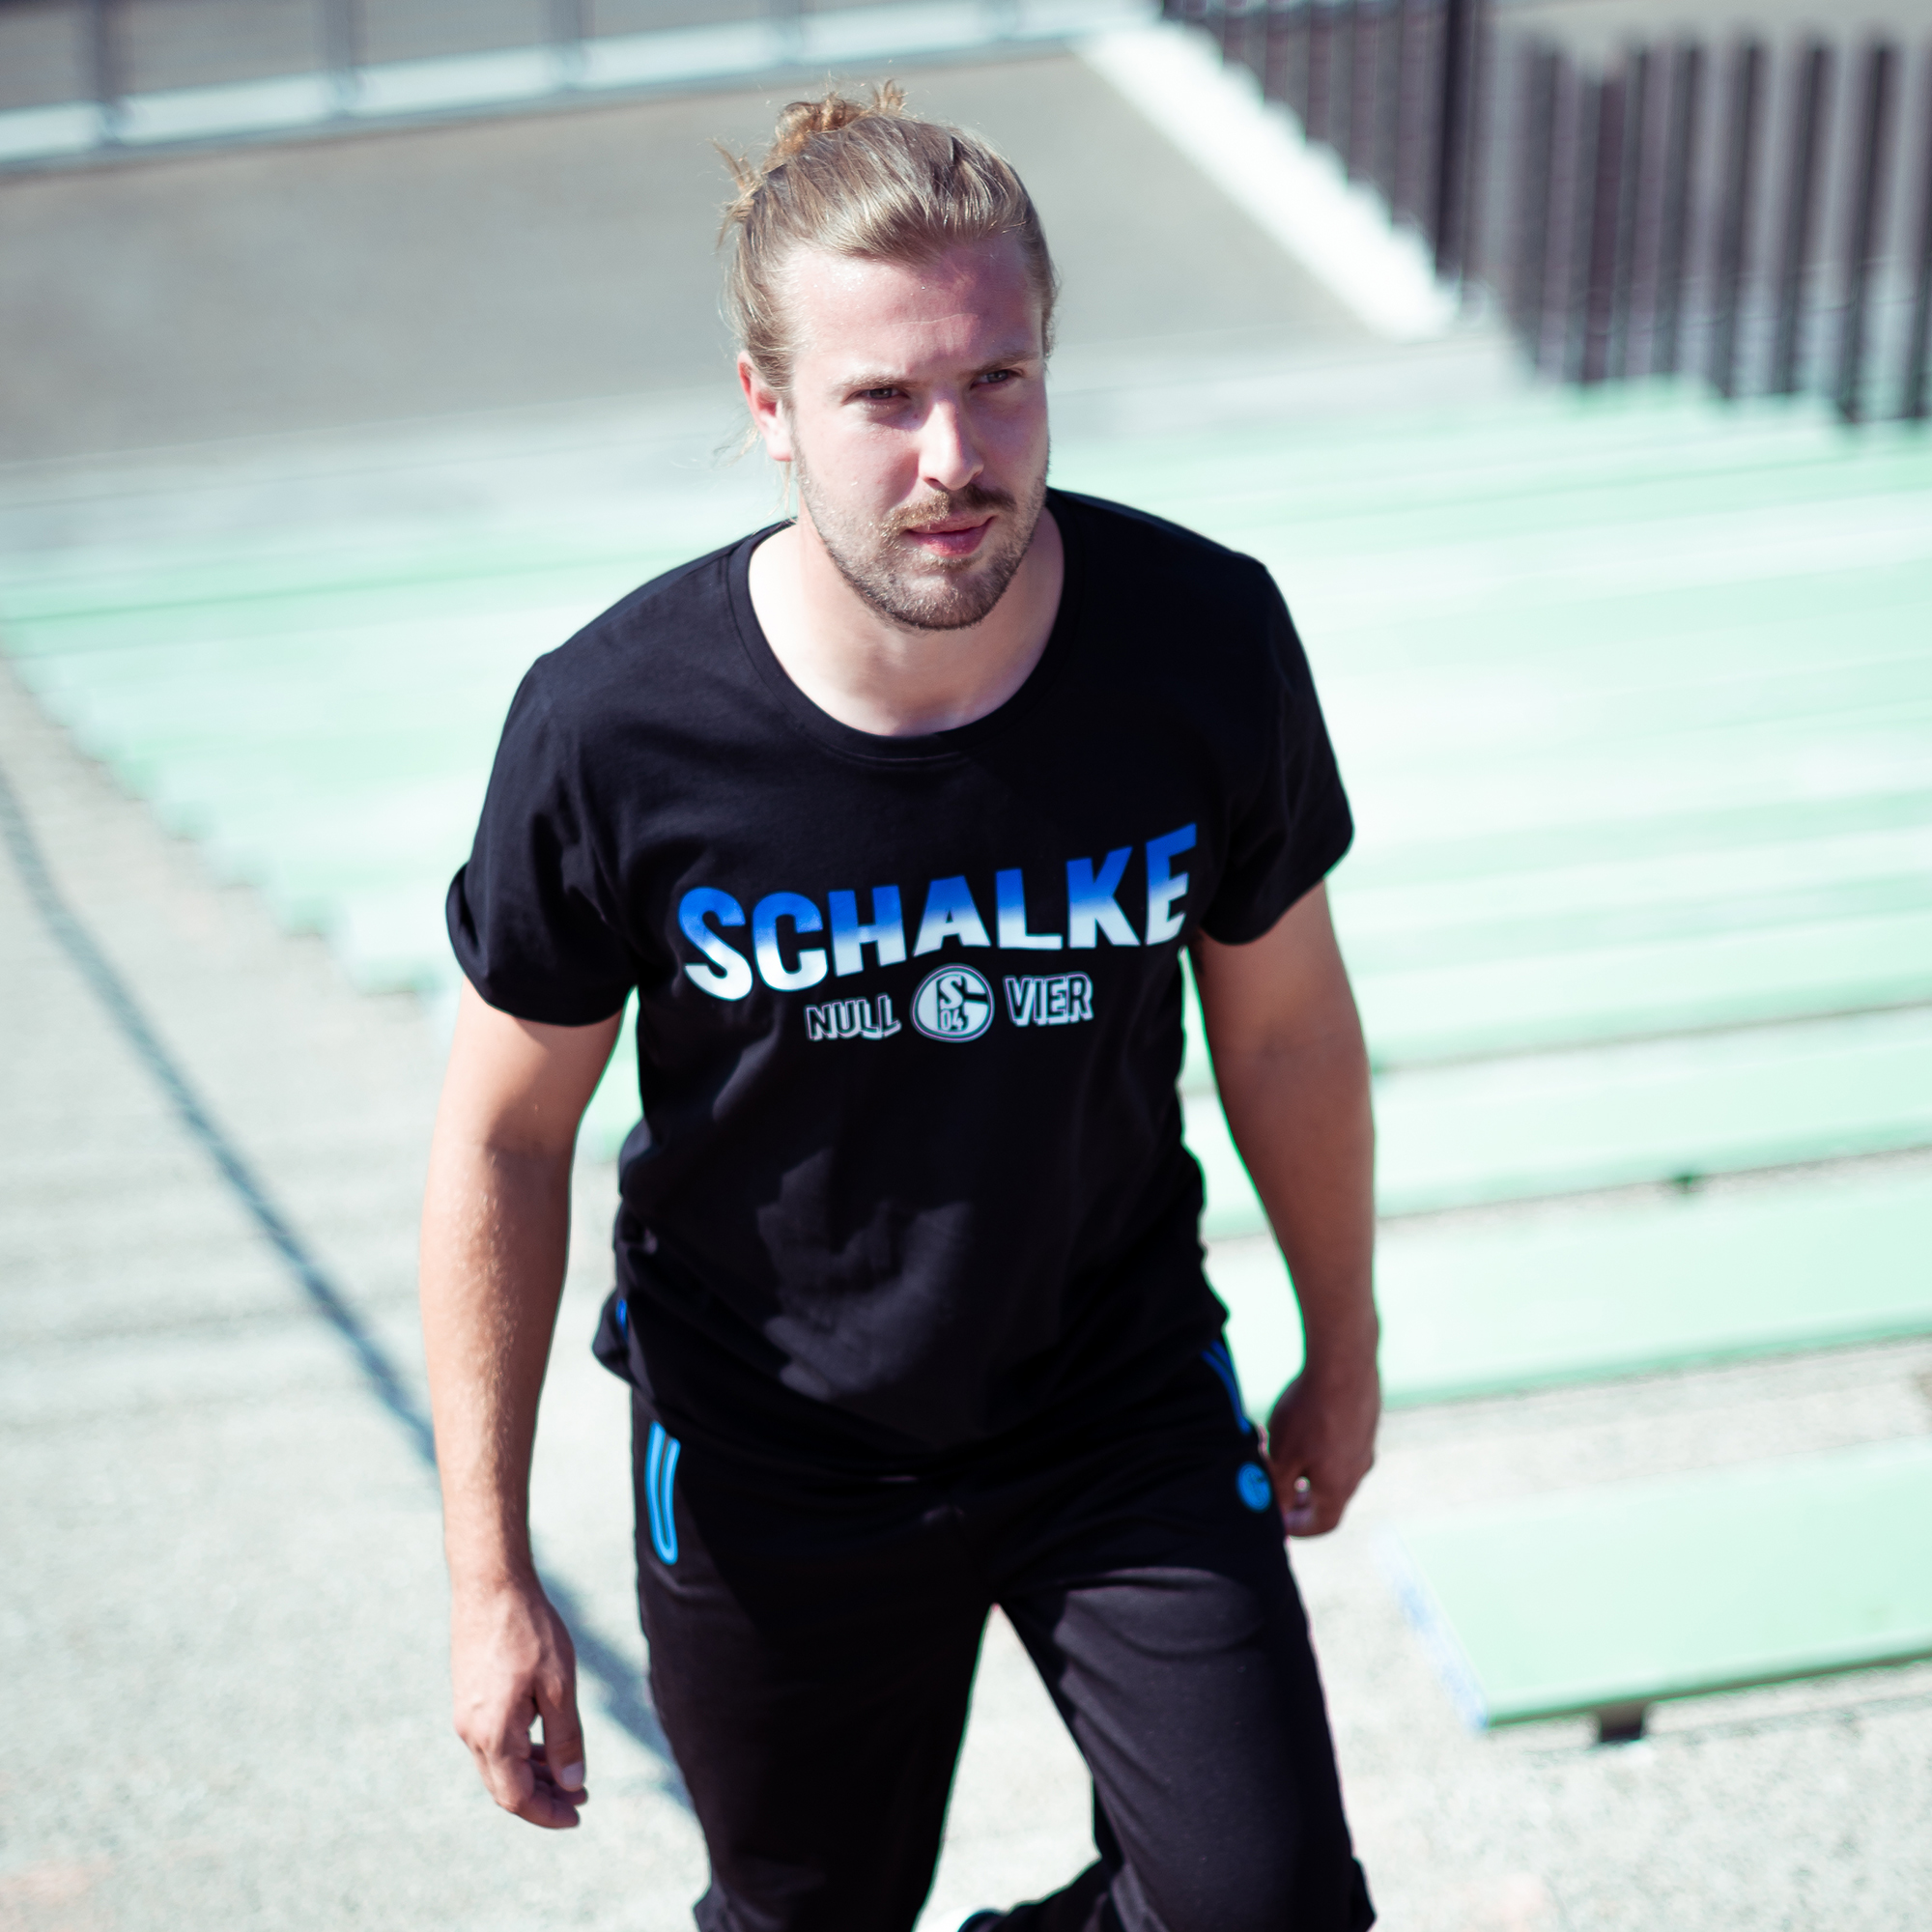 T-Shirt Schalke Farbverlauf